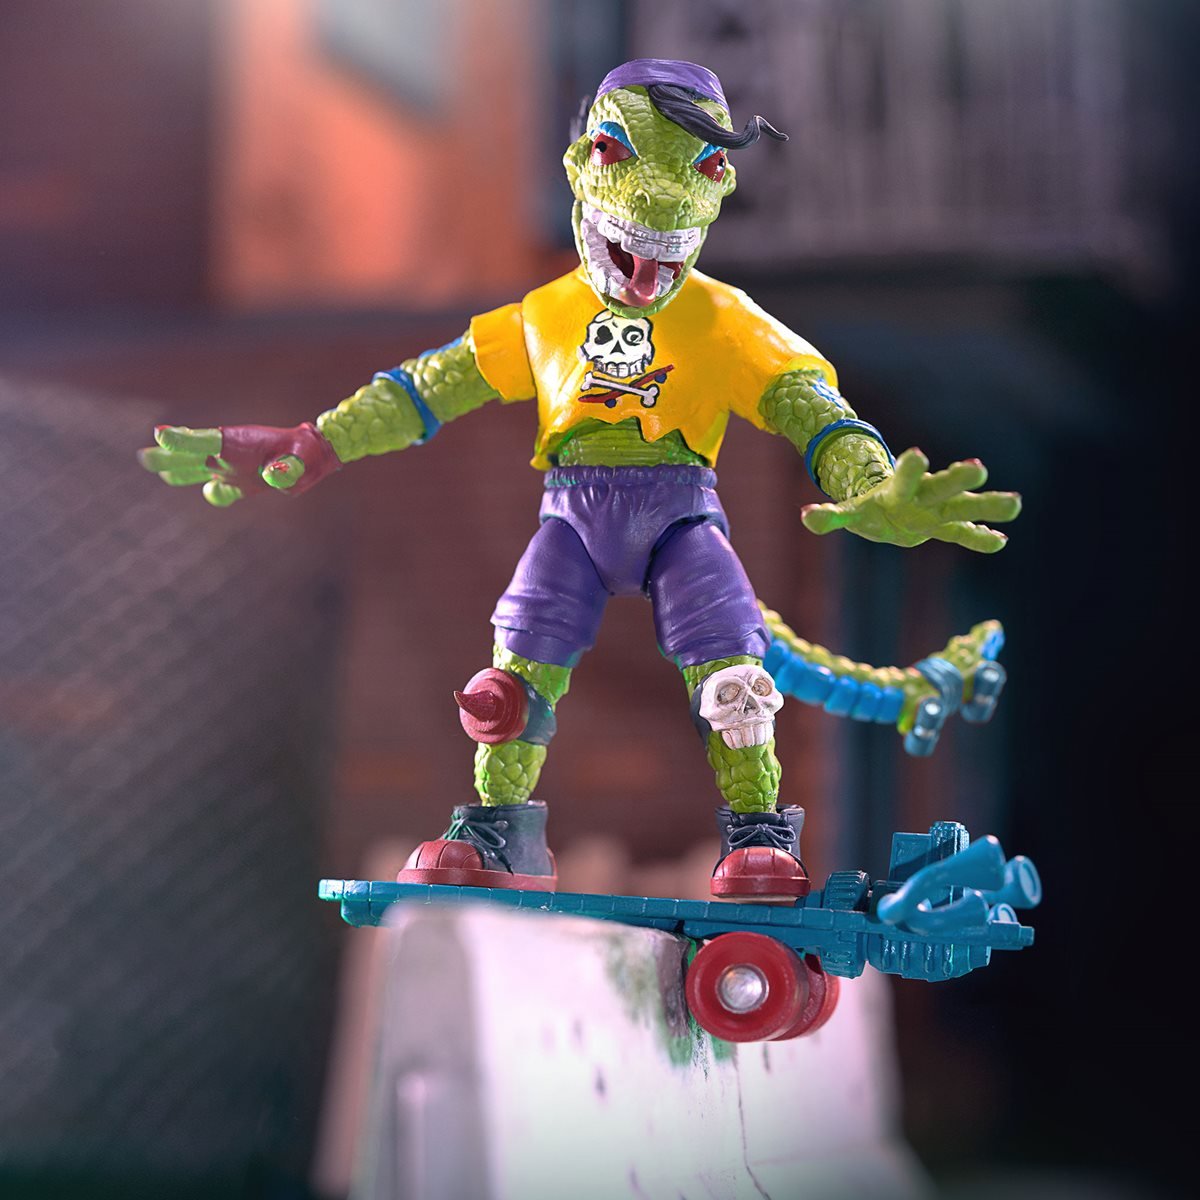 Teenage Mutant Ninja Turtles ULTIMATES! Wave 4 - Donatello – Super7